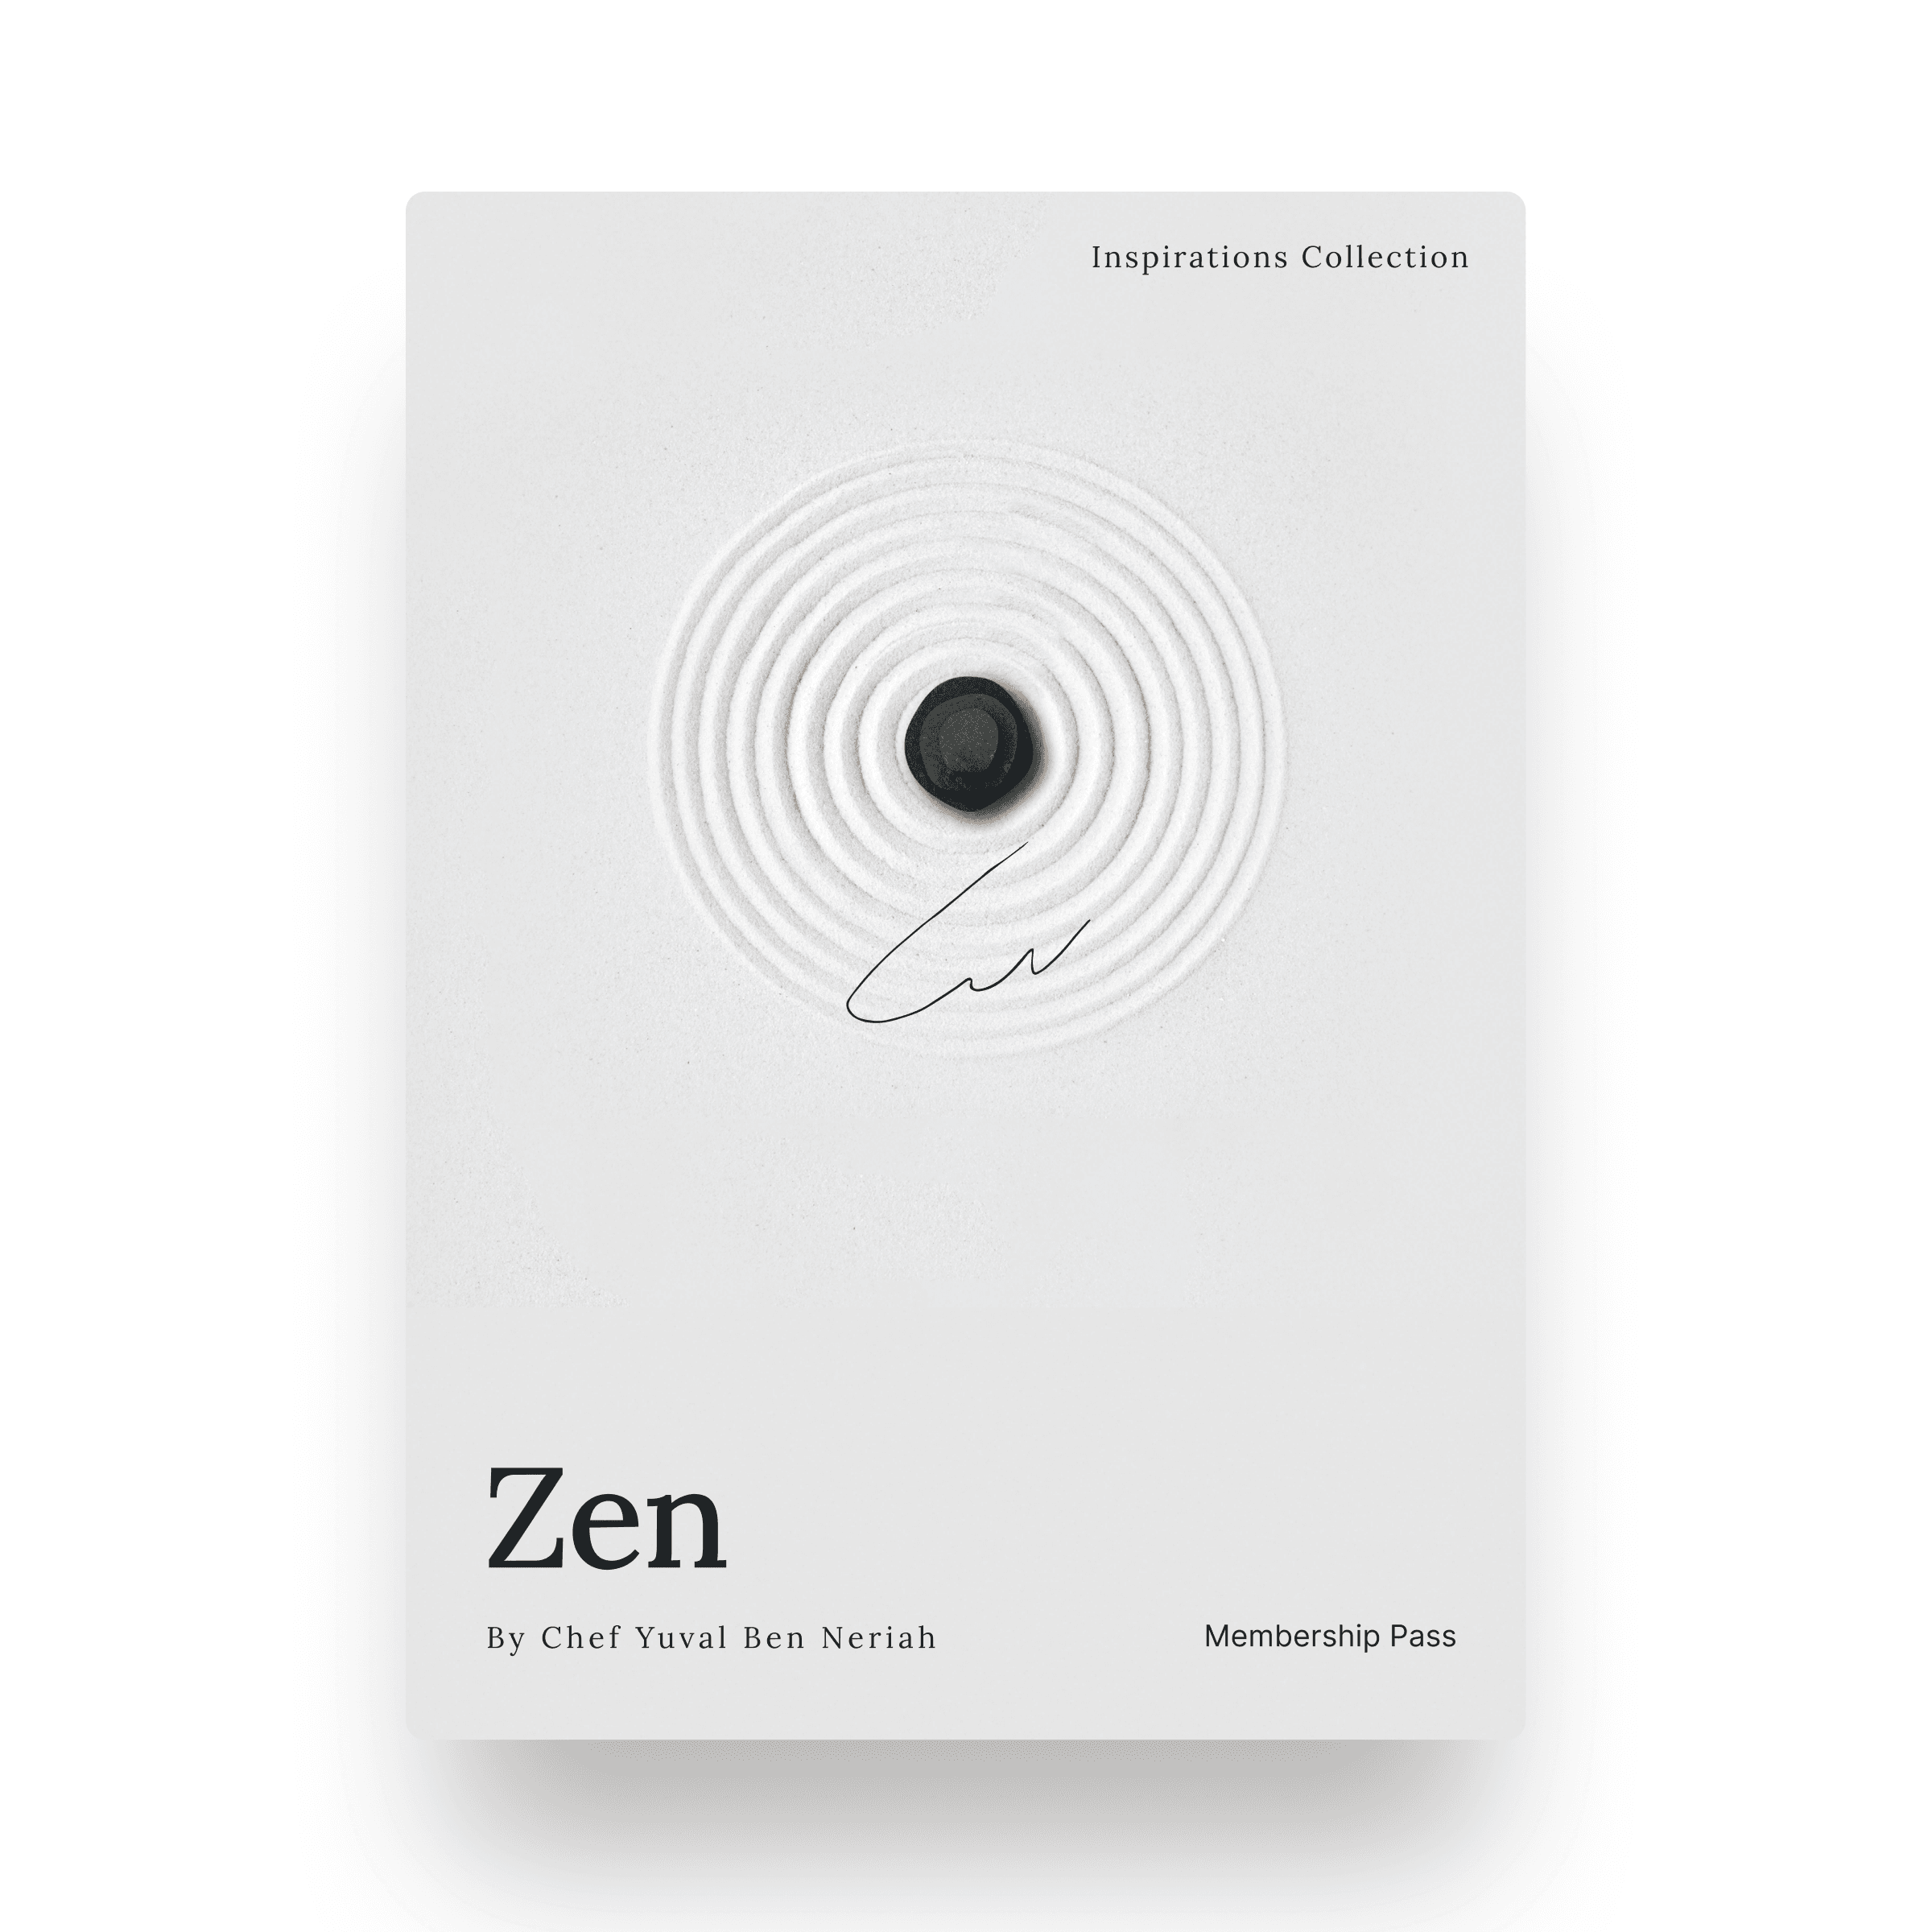 Zen by Chef Yuval Ben Neriah